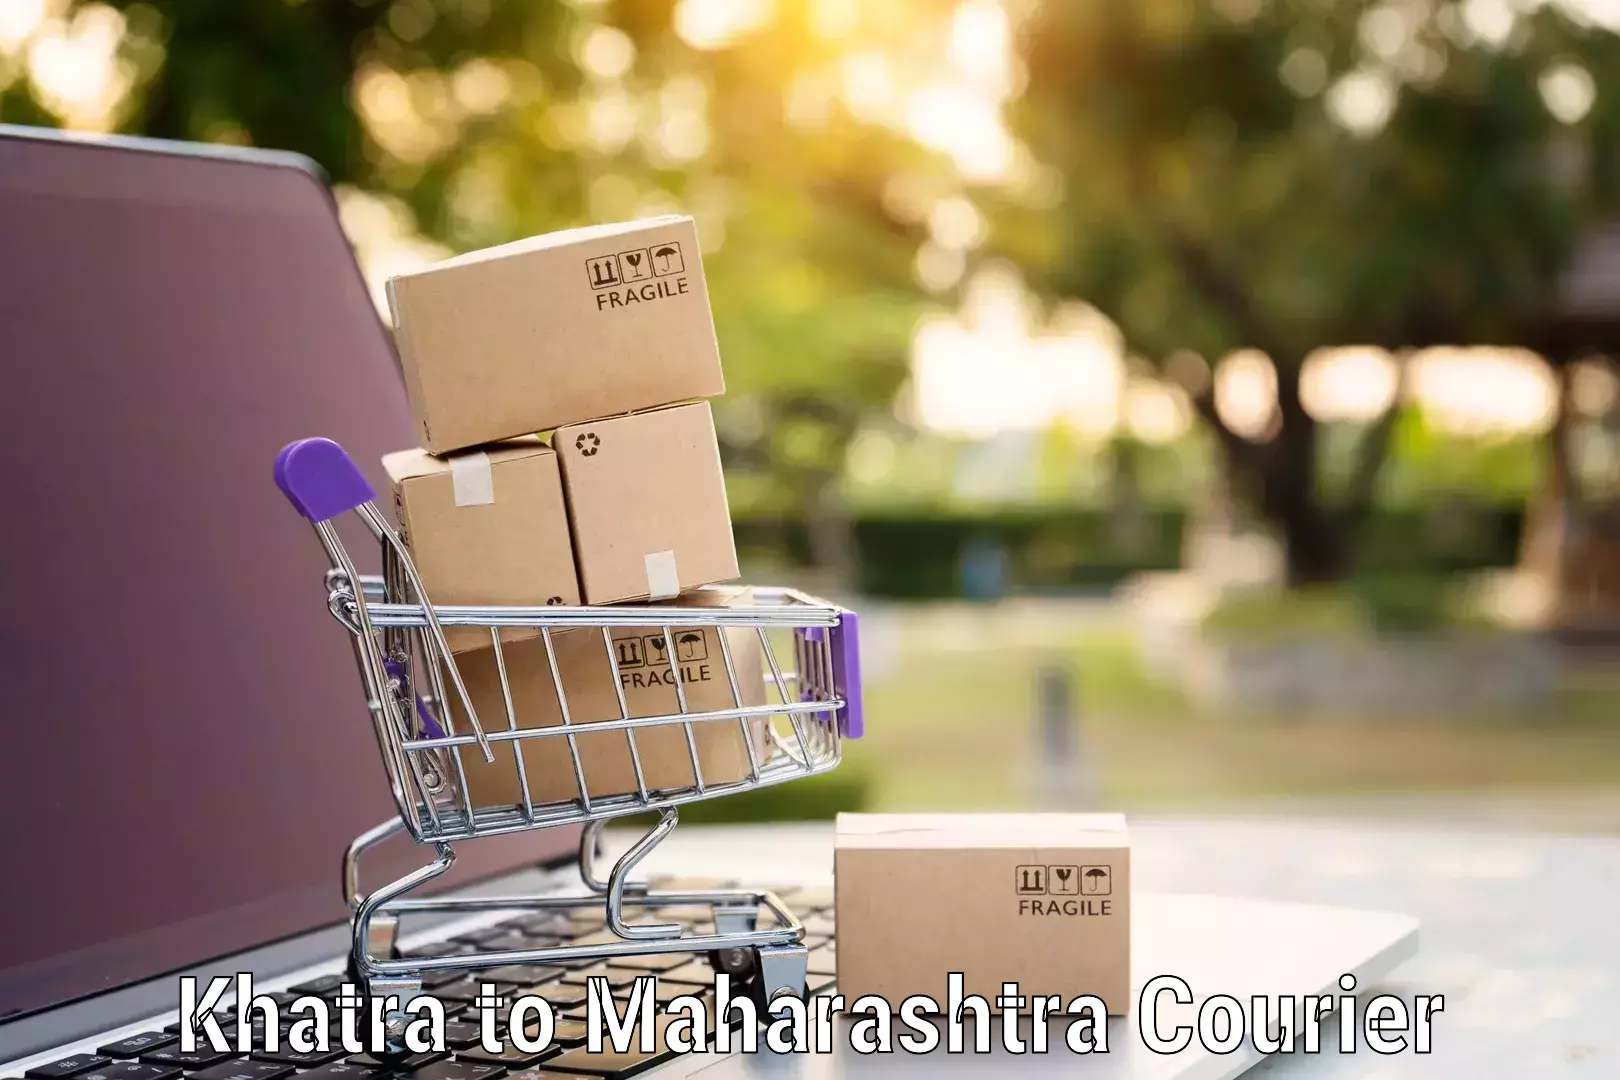 Full home relocation services Khatra to Maharashtra